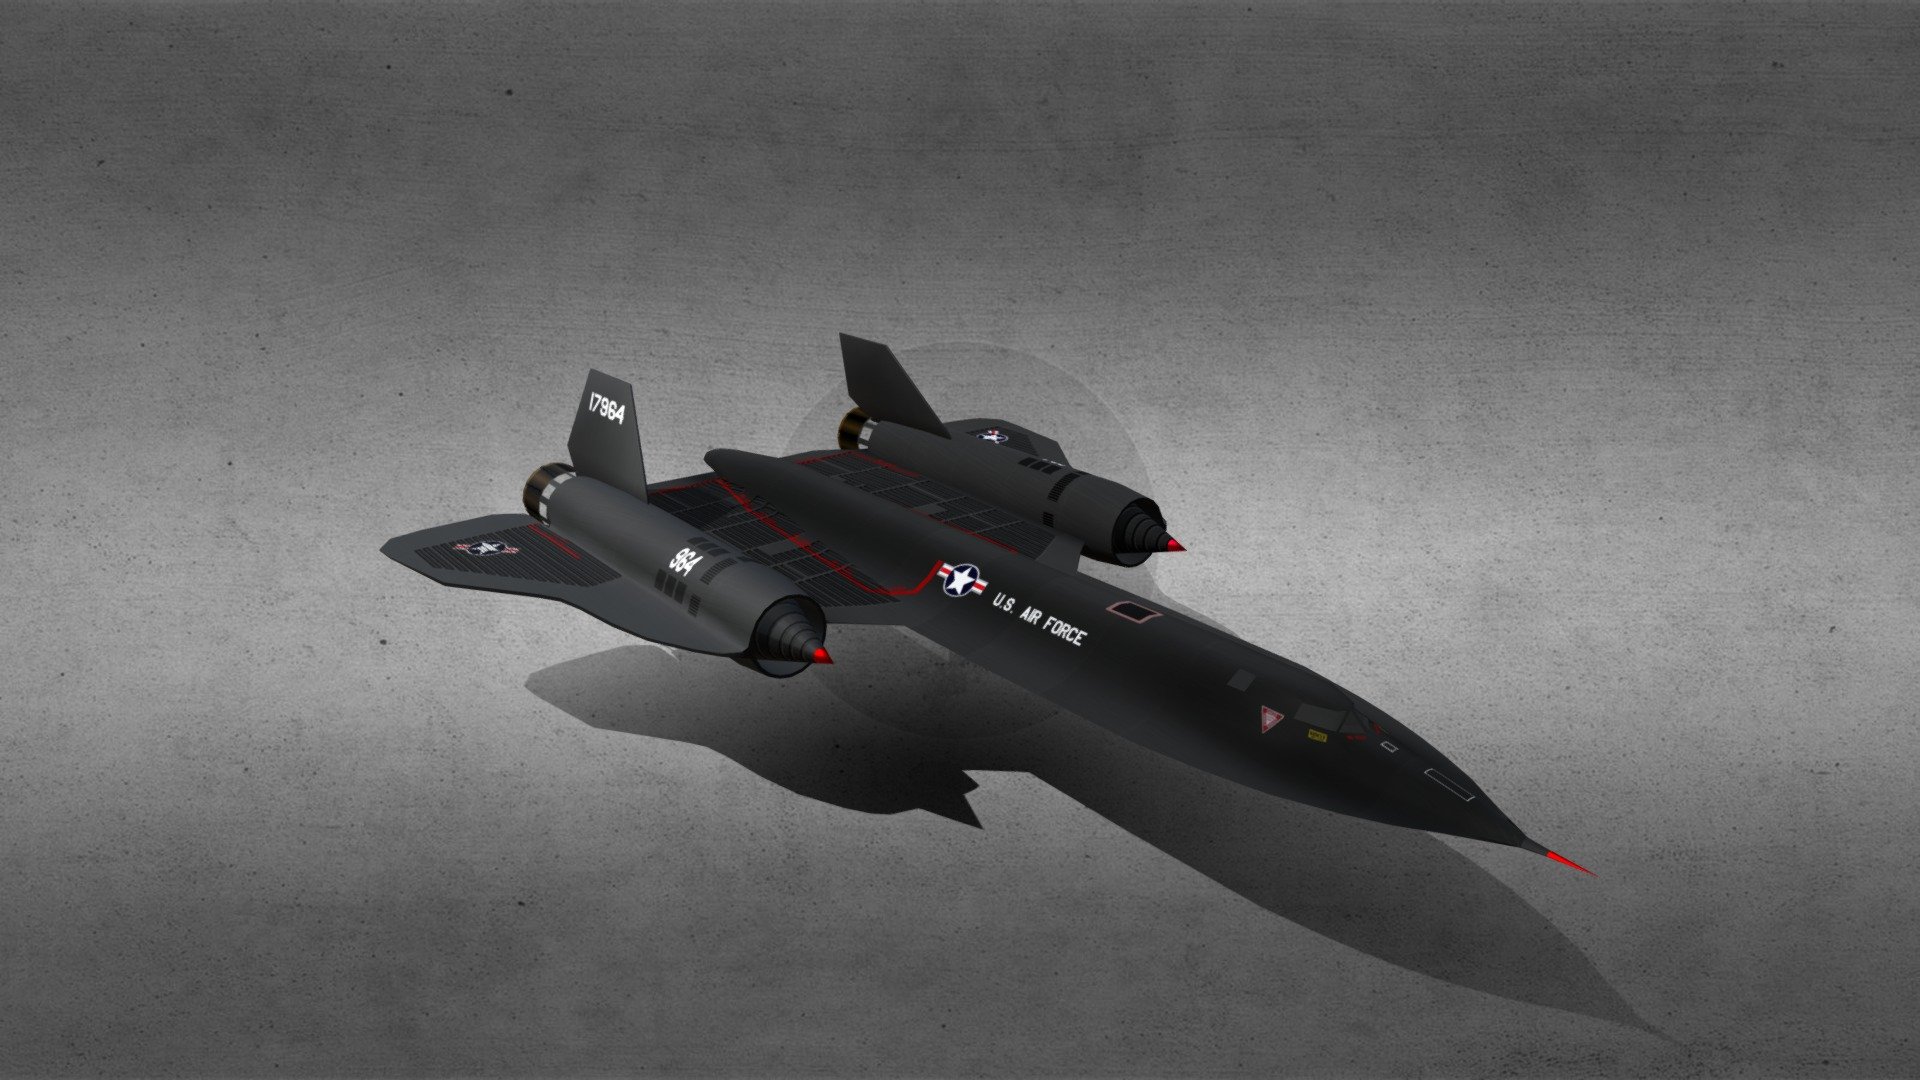 low poly - SR-71 spyplane - 3D model by Chad Brocker (@cbrocker) 3d model